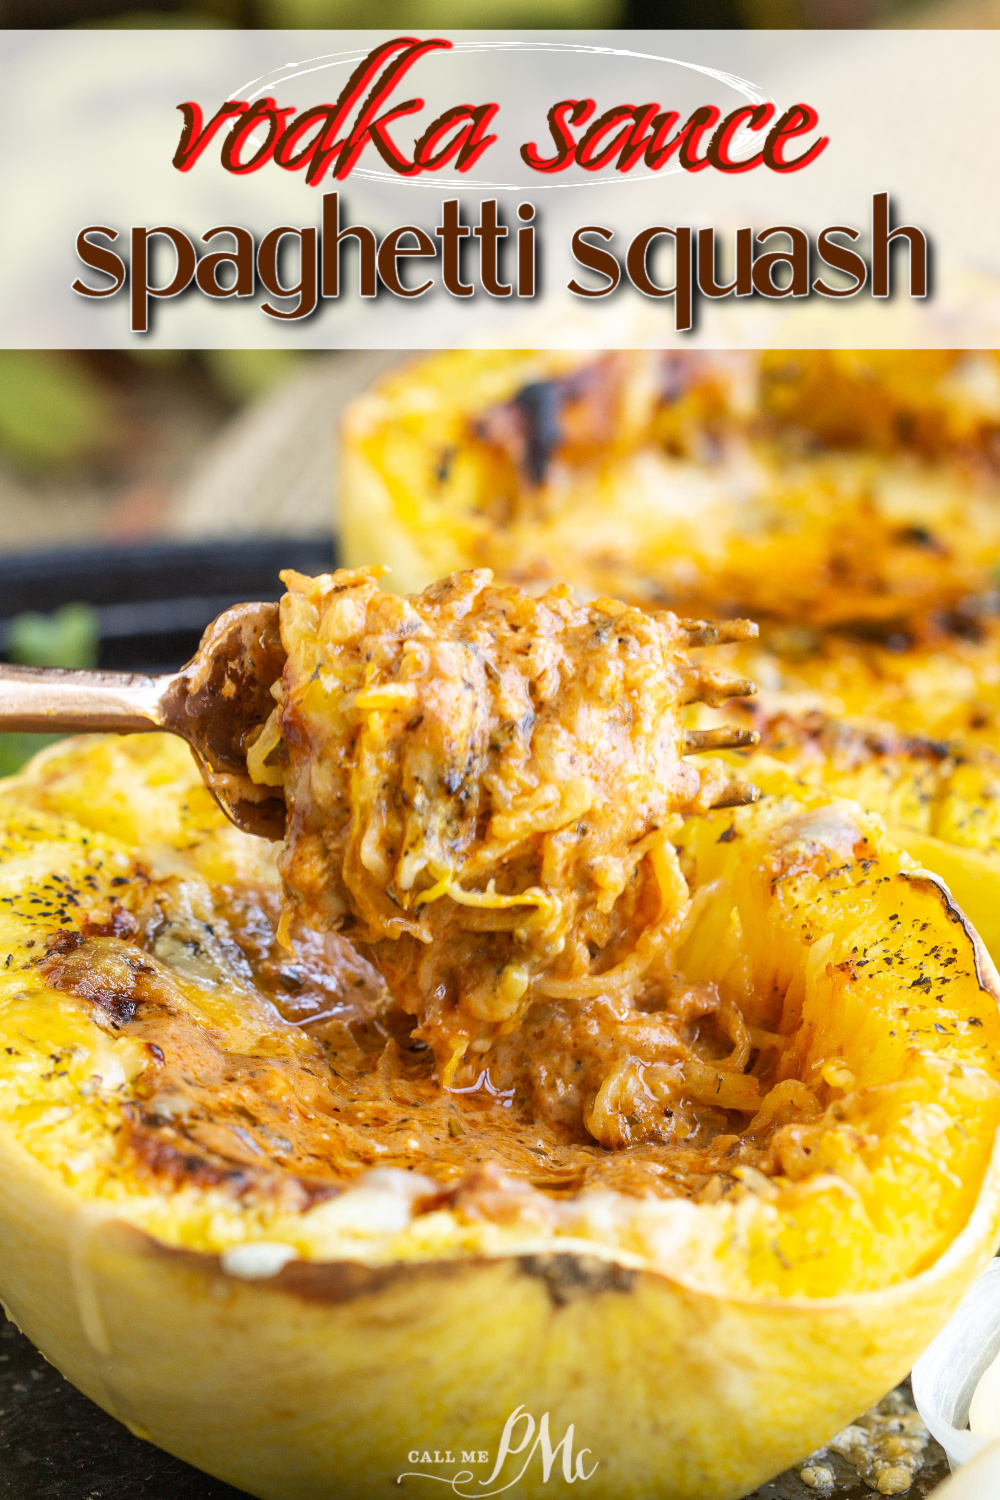 titled graphic for spaghetti squash recipe.